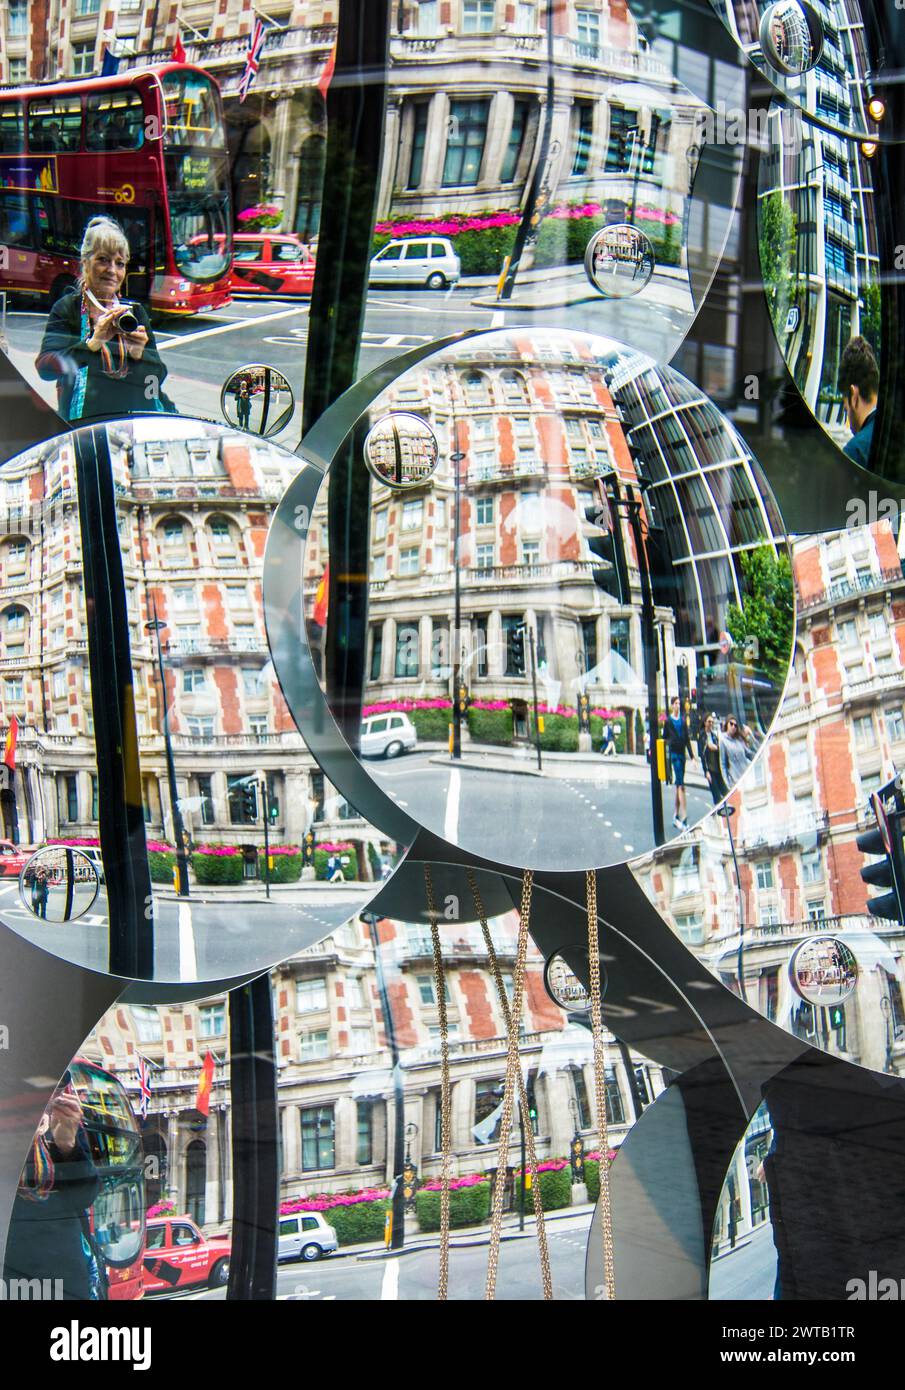 Reflets des bâtiments de Piccadilly Street dans l'affichage en vitrine de multiples miroirs concaves - Londres, Royaume-Uni Banque D'Images